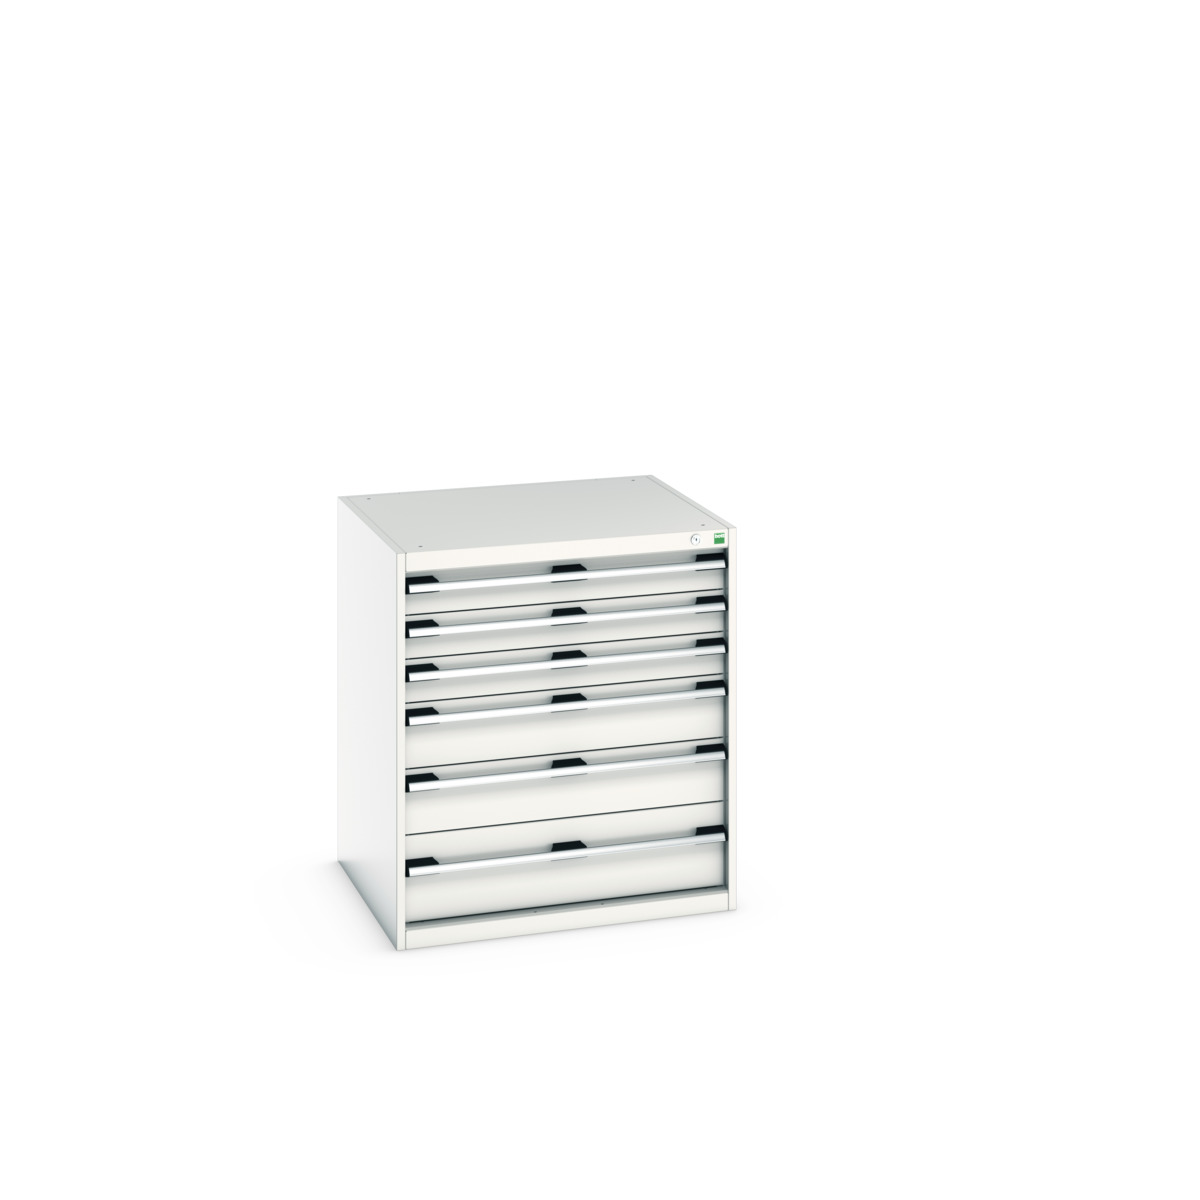 40028115.16V - cubio drawer cabinet